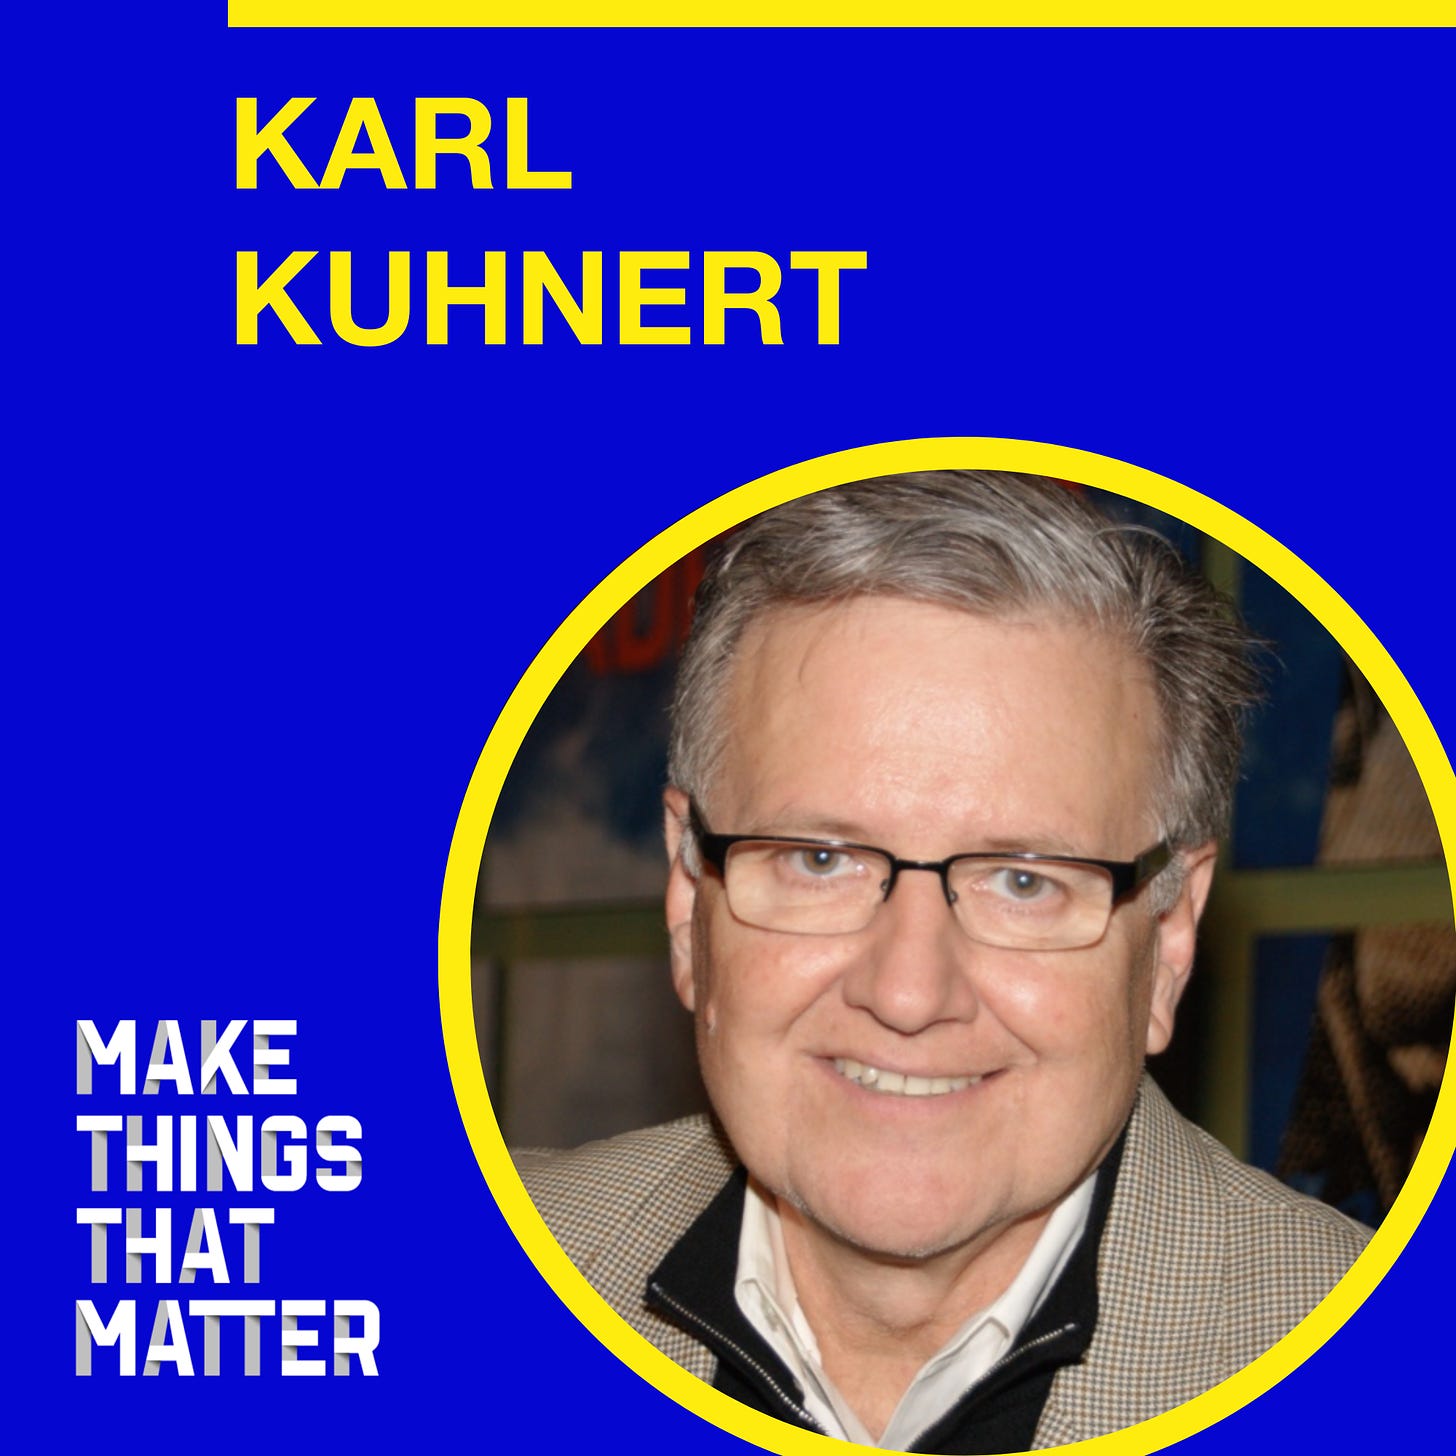 Karl Kuhnert